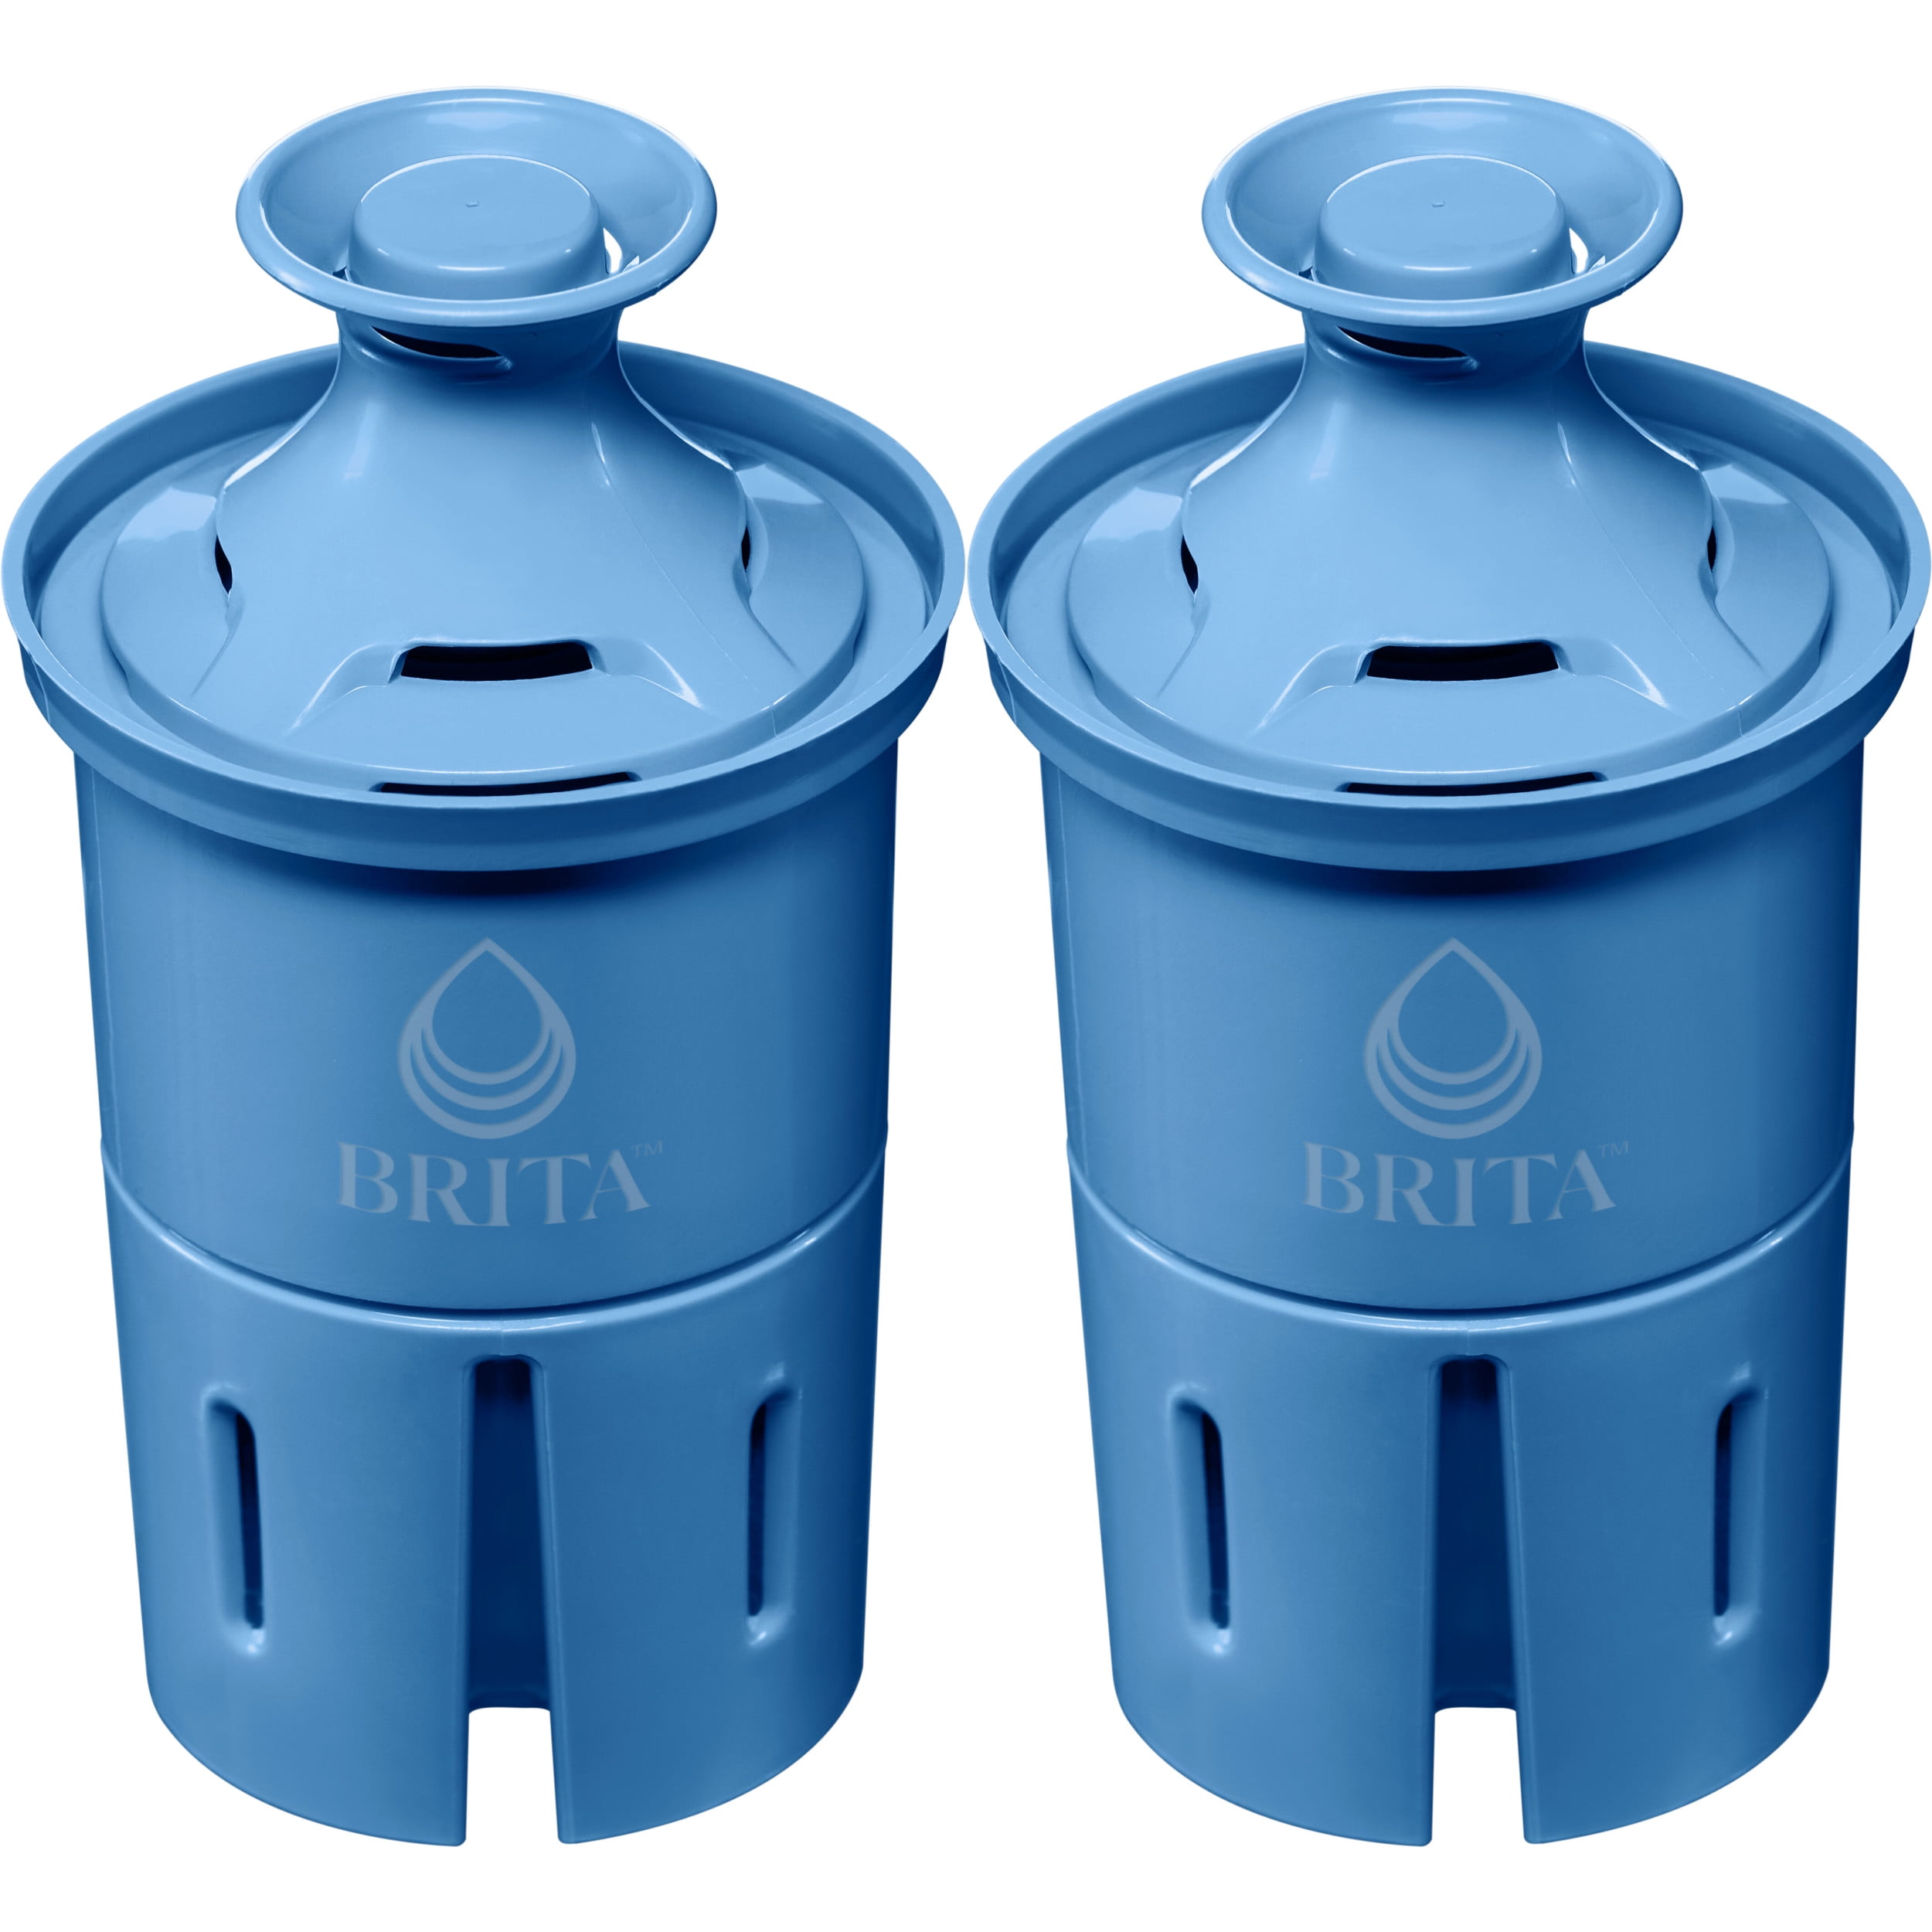 Brita Water Filtration Pitcher #OB36/OB03 Uses OB03 Filter (bslf)